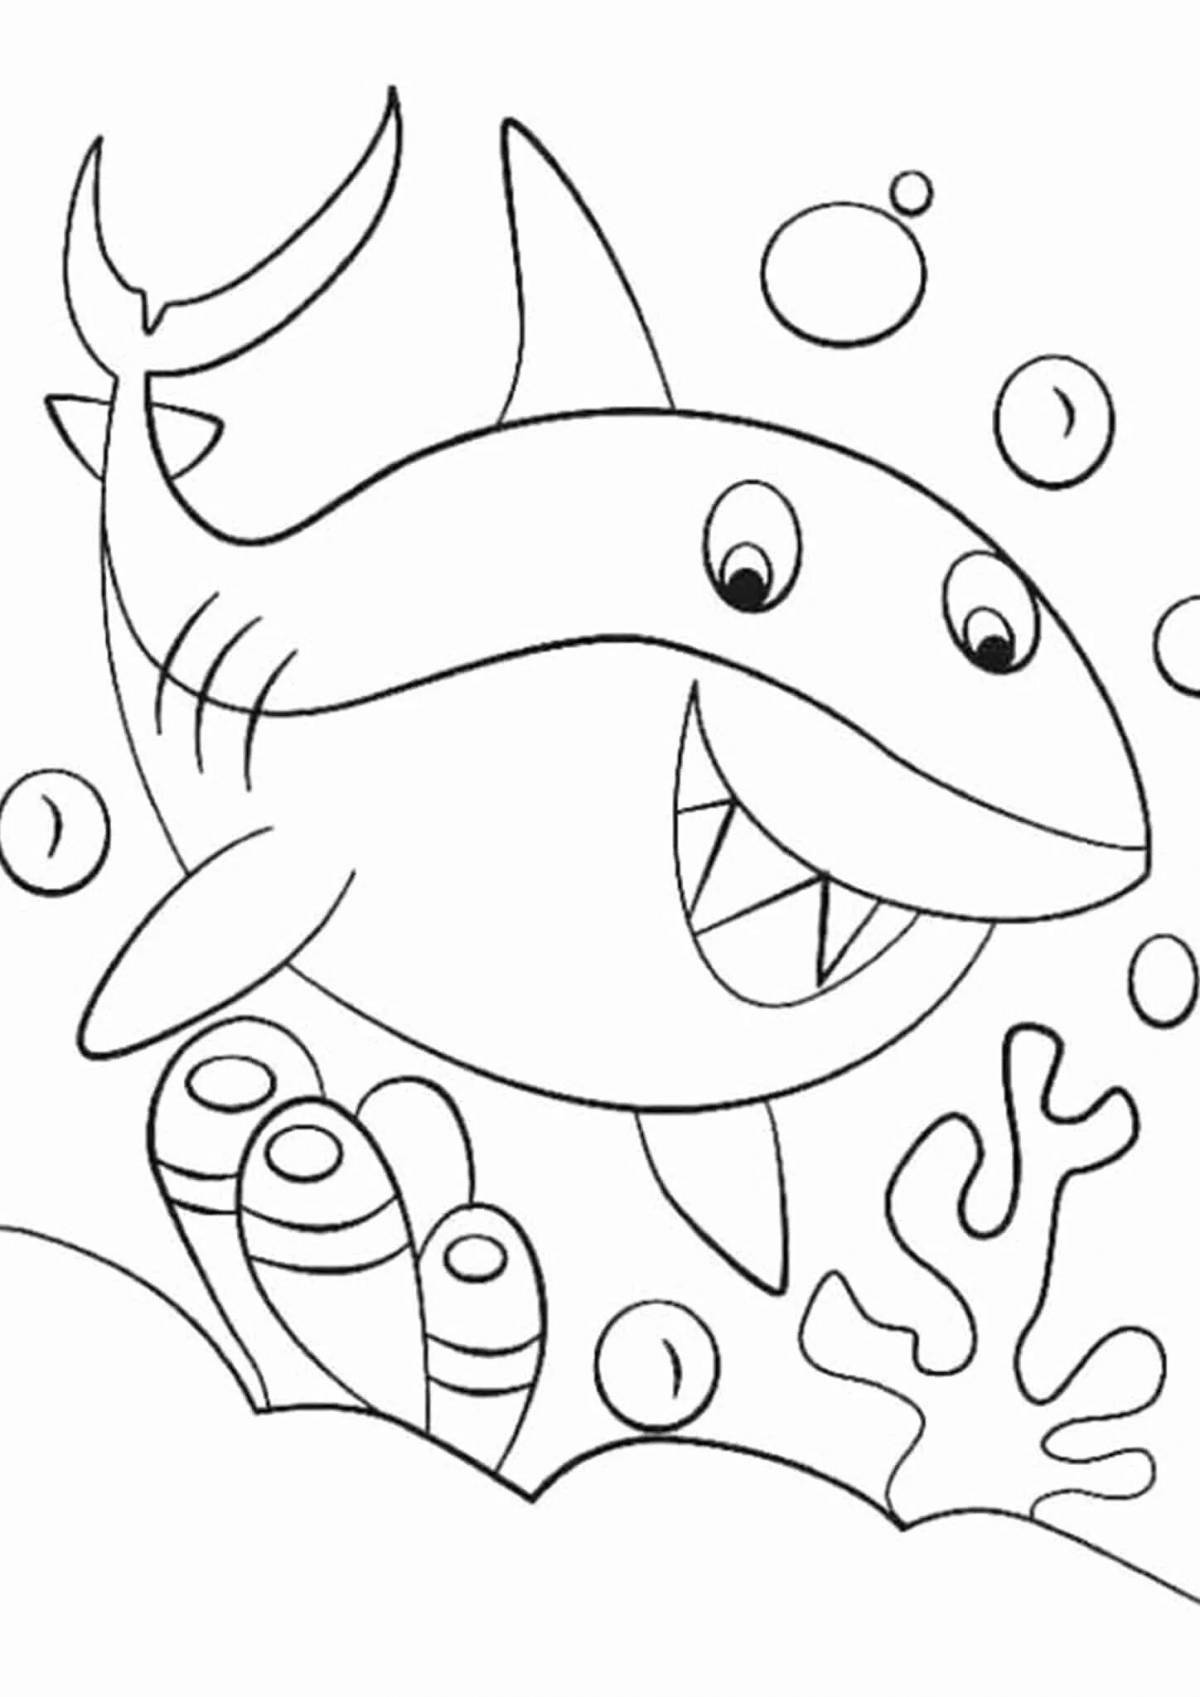 Юмористическая акула-раскраска для детей